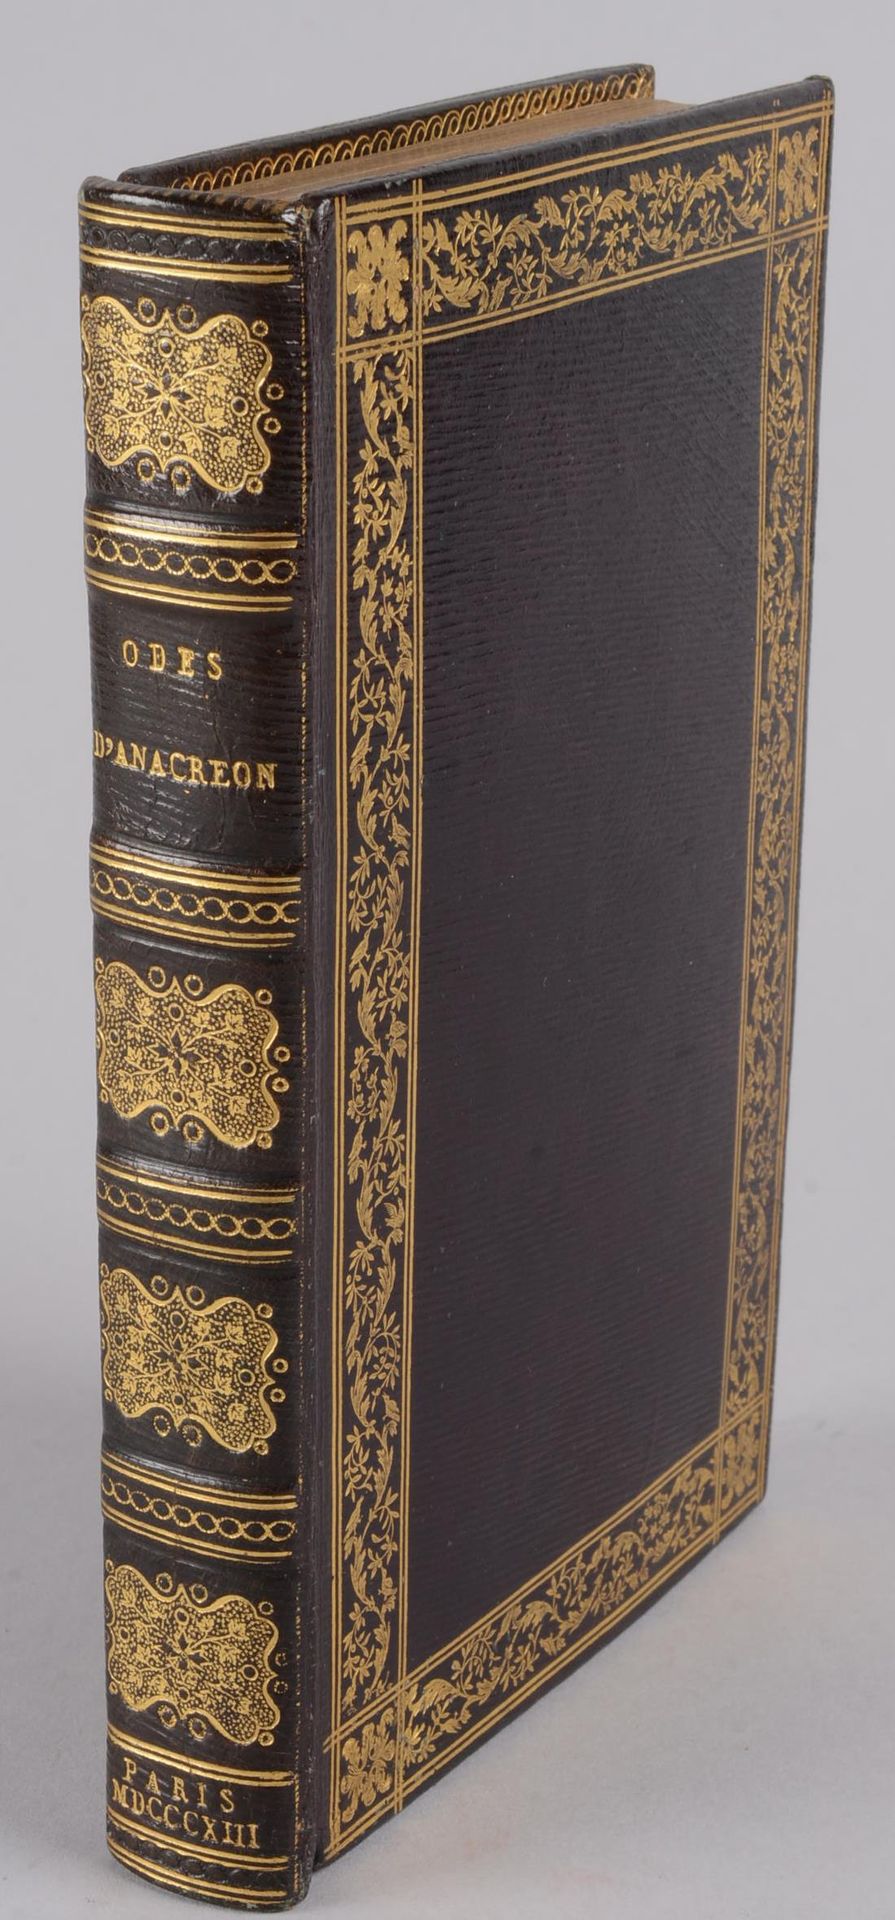 ANACREON ANACREON



 Oden des Anakreon



 Paris, von H. Nicolle, 1813



 Klei&hellip;